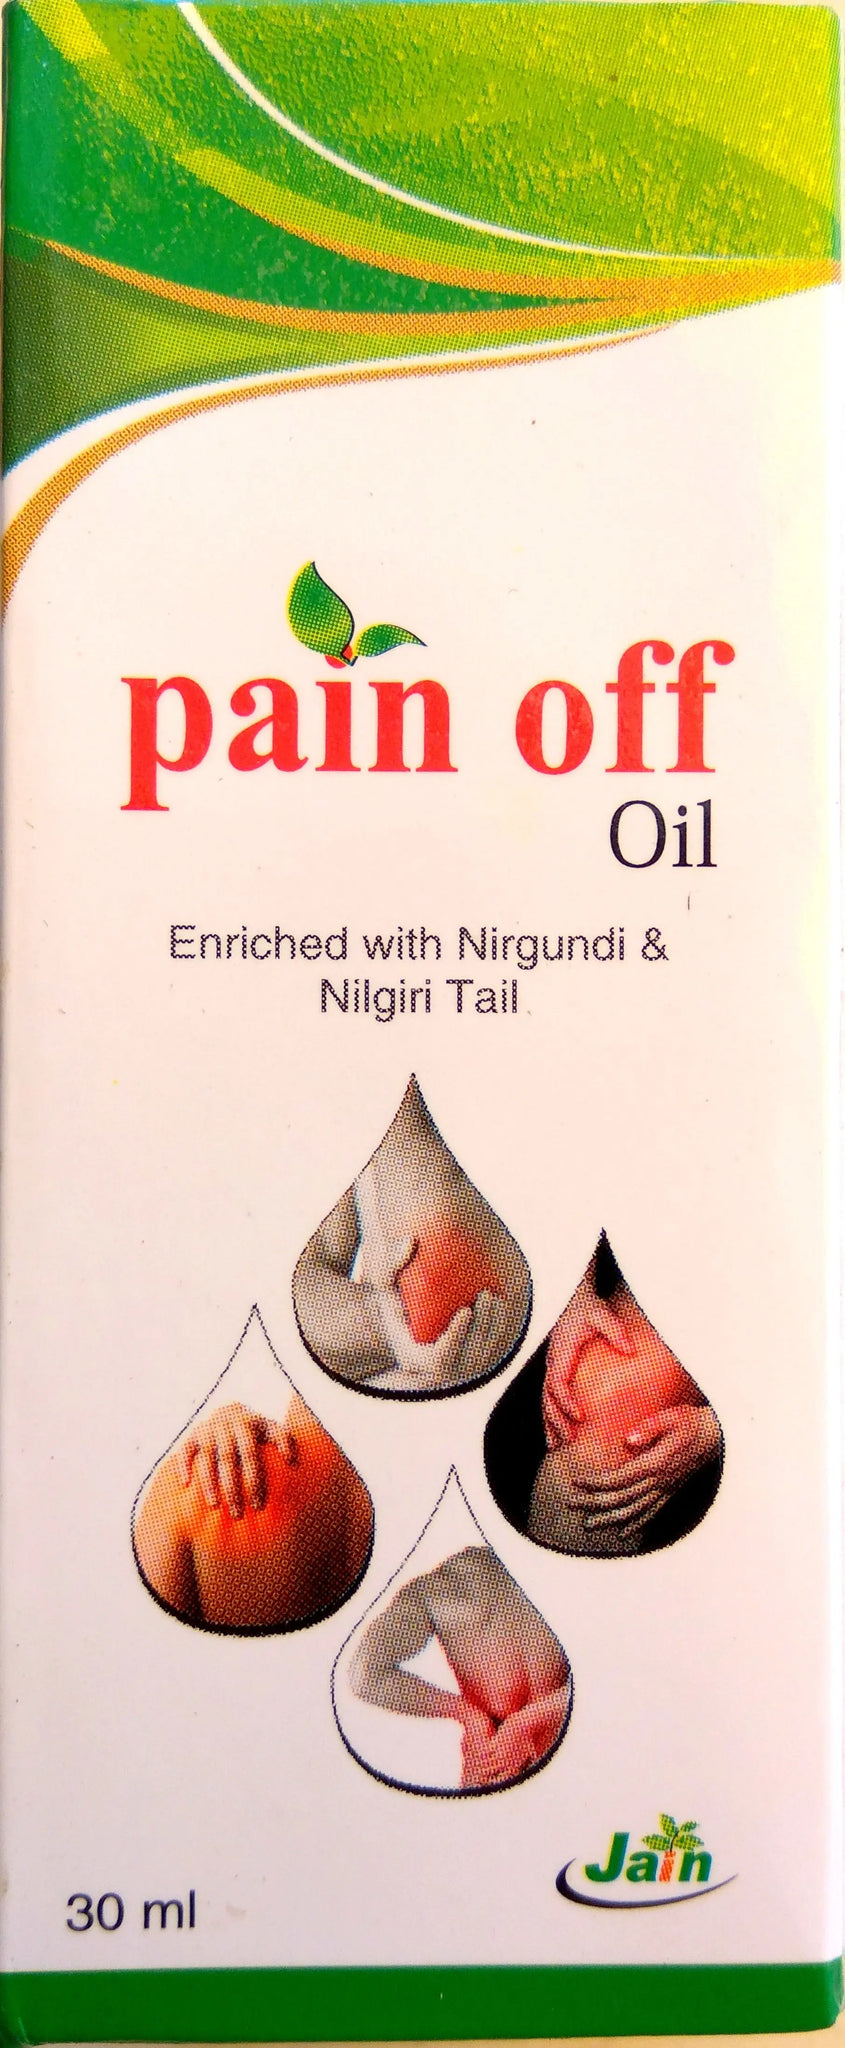 Pain off Oil 100ml Jain